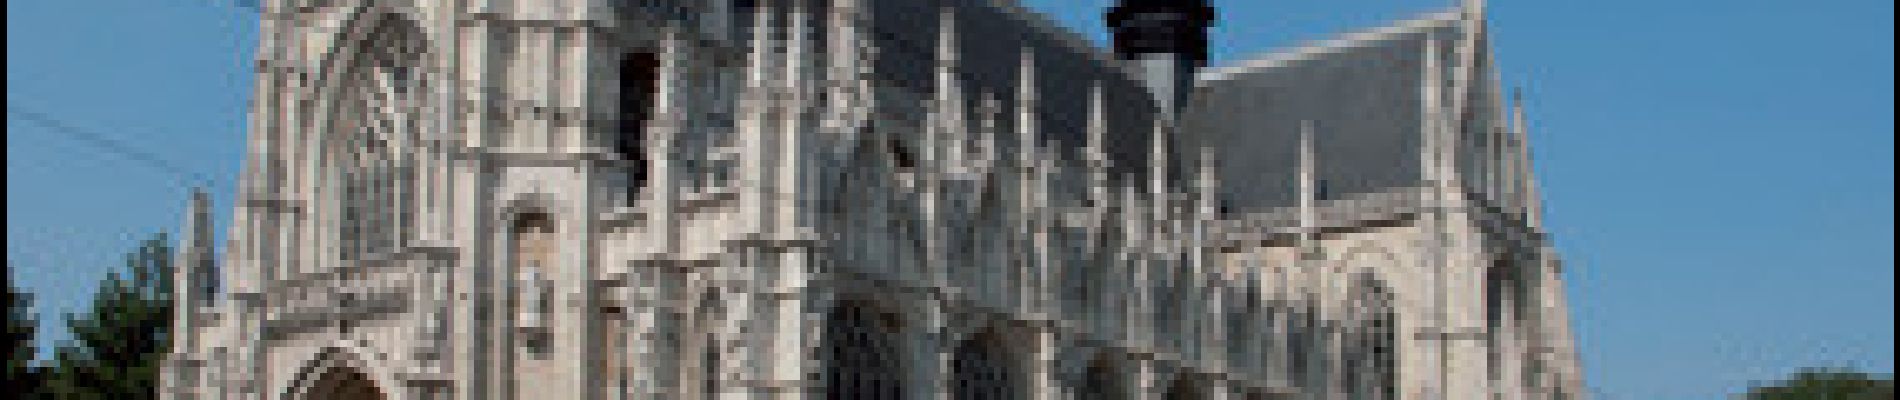 POI Stadt Brüssel - Église Notre-Dame des Victoires au Sablon - Photo